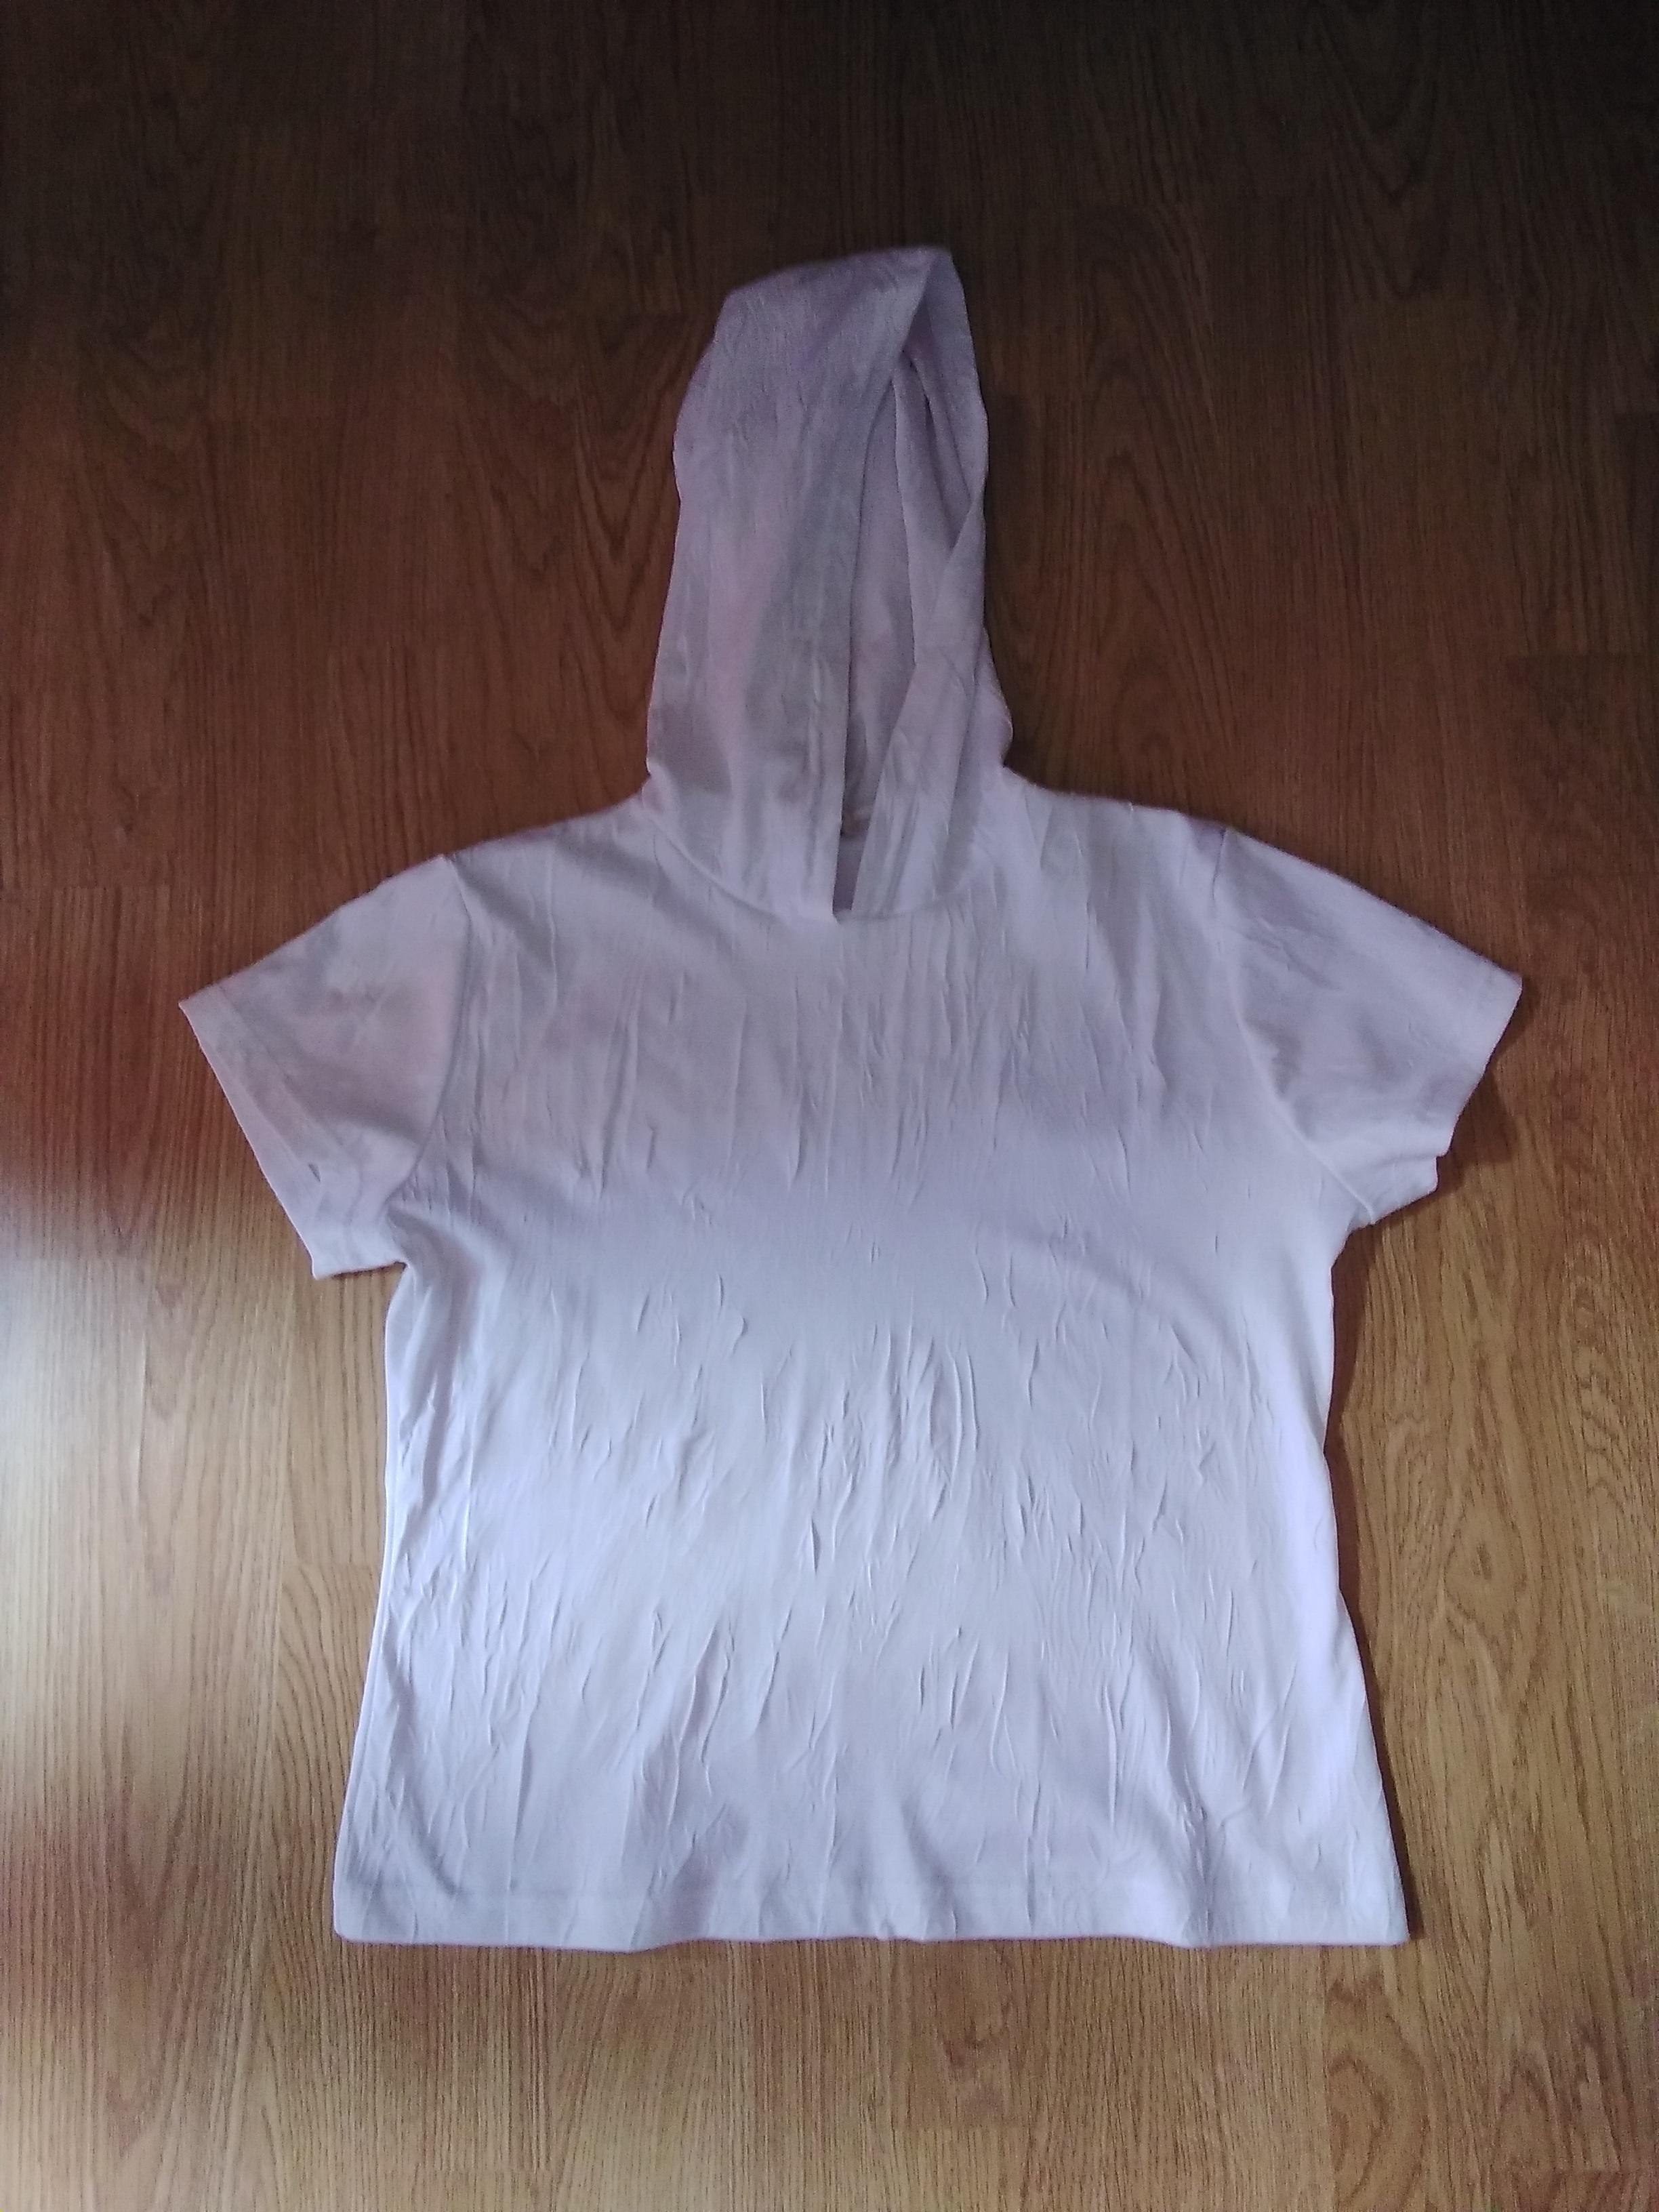 troc de troc t shirt a capuche blanc femme taille 38 image 0